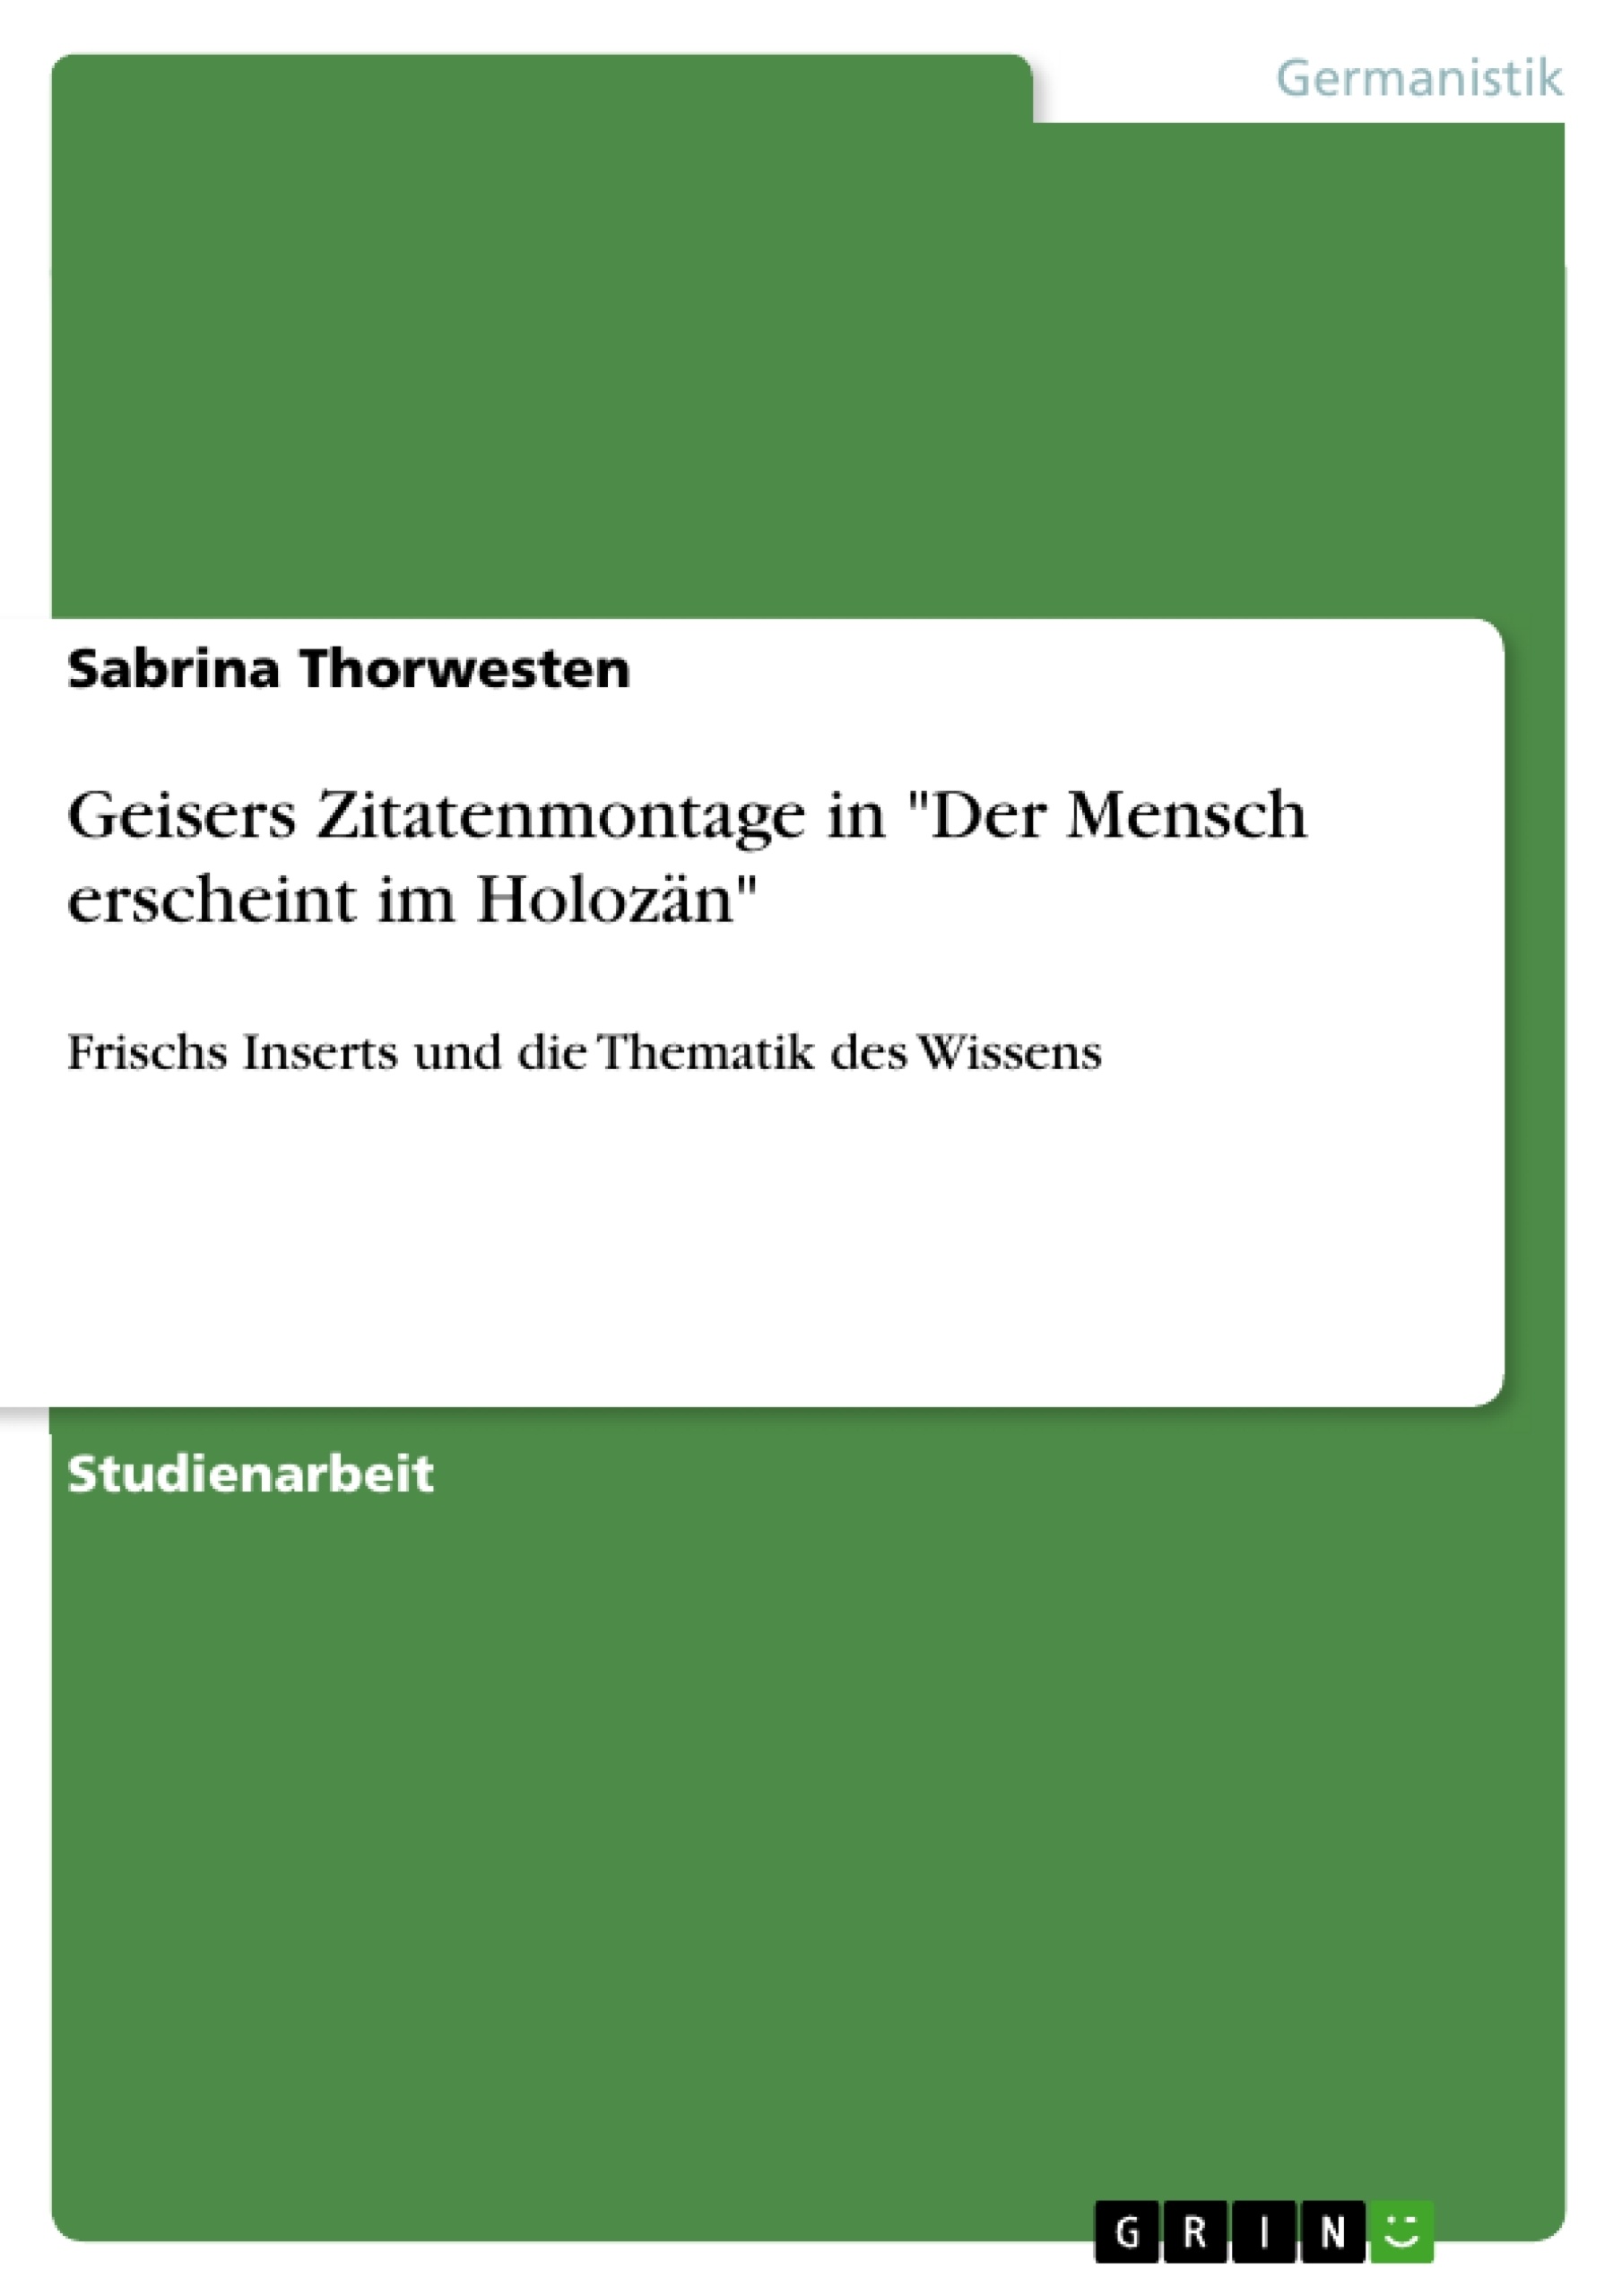 Titre: Geisers Zitatenmontage in "Der Mensch erscheint im Holozän"